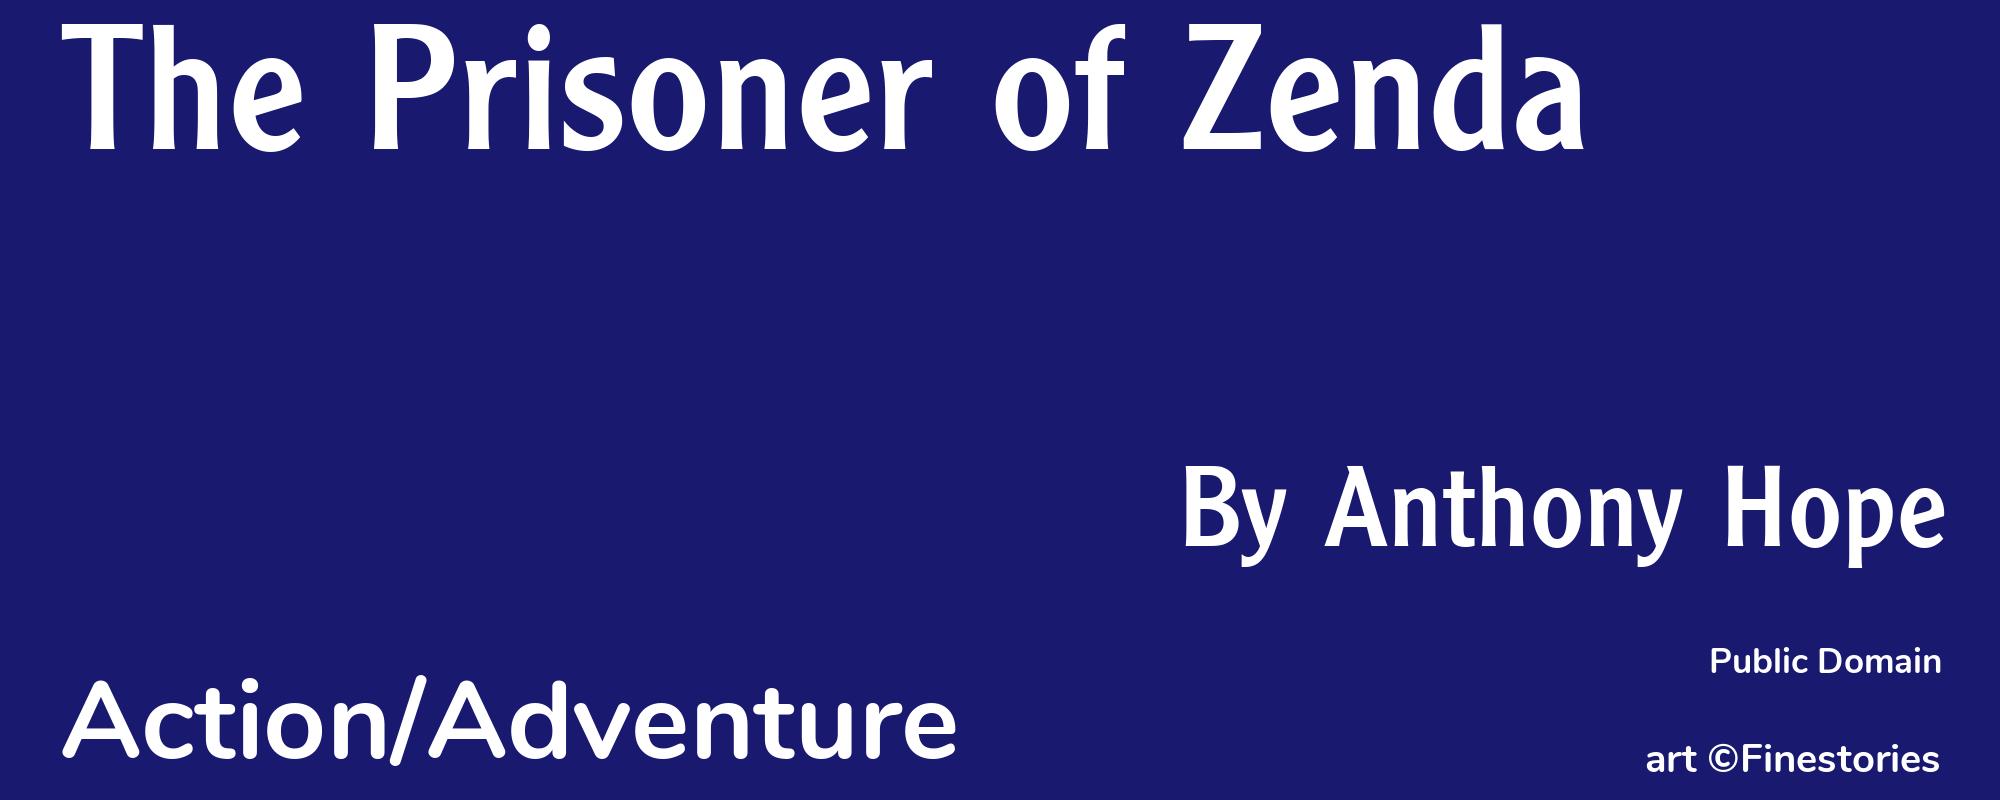 The Prisoner of Zenda - Cover